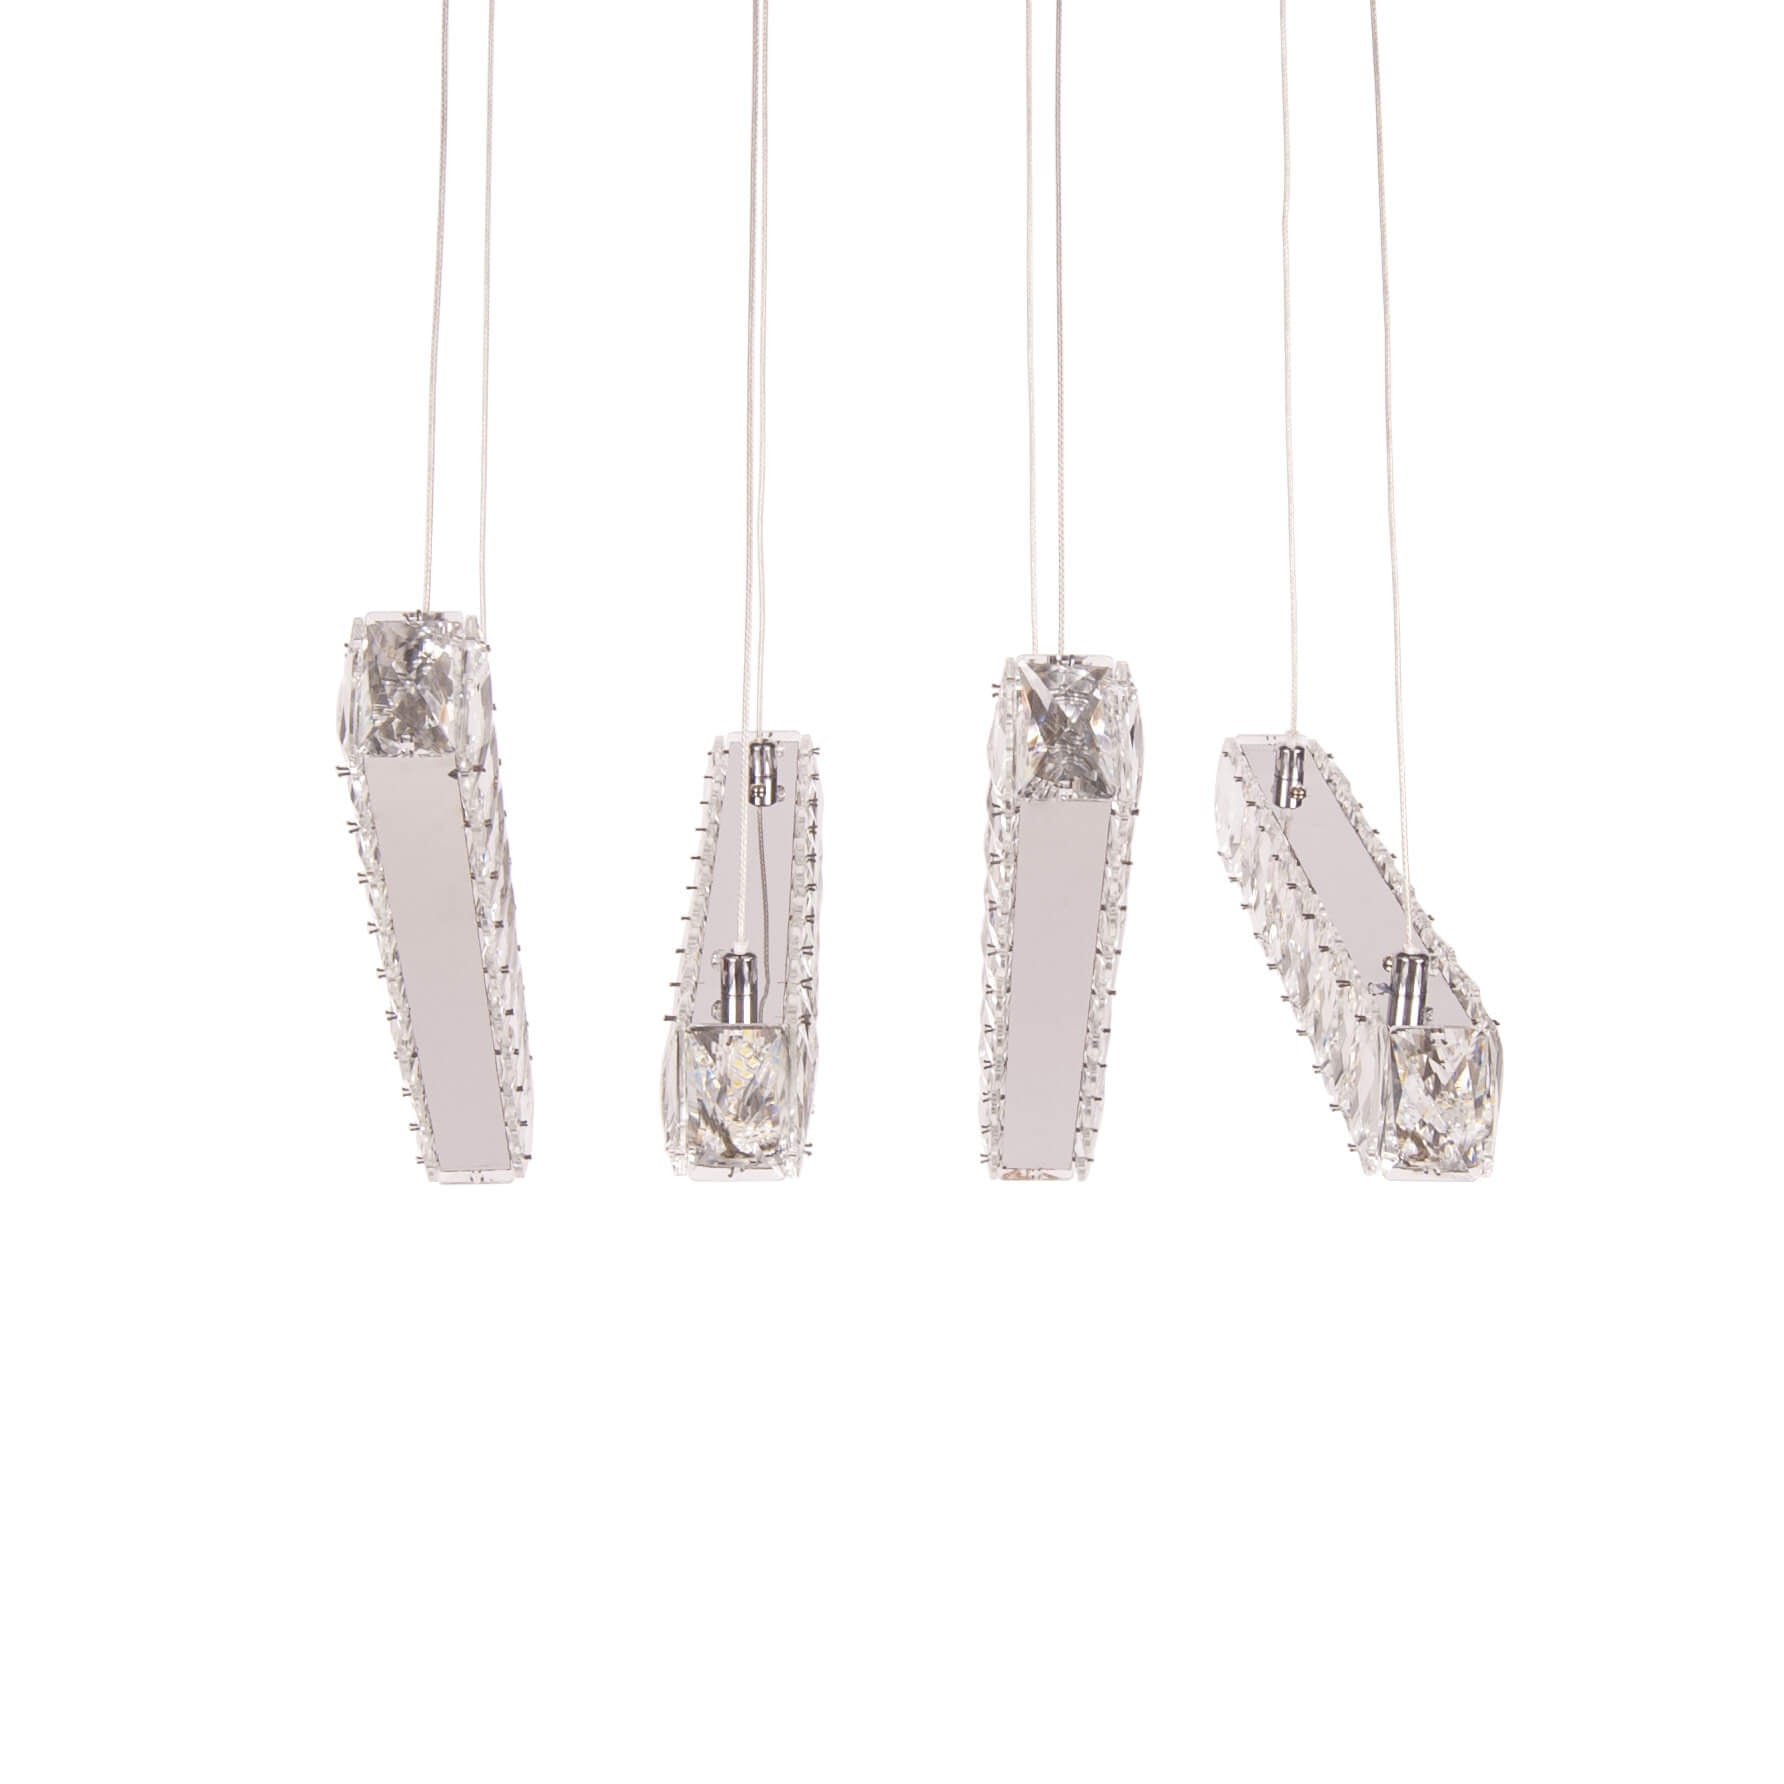 Lustra argintie cu LED MOSI din sticla, design deosebit, modern, elegant, pentru living sau dining